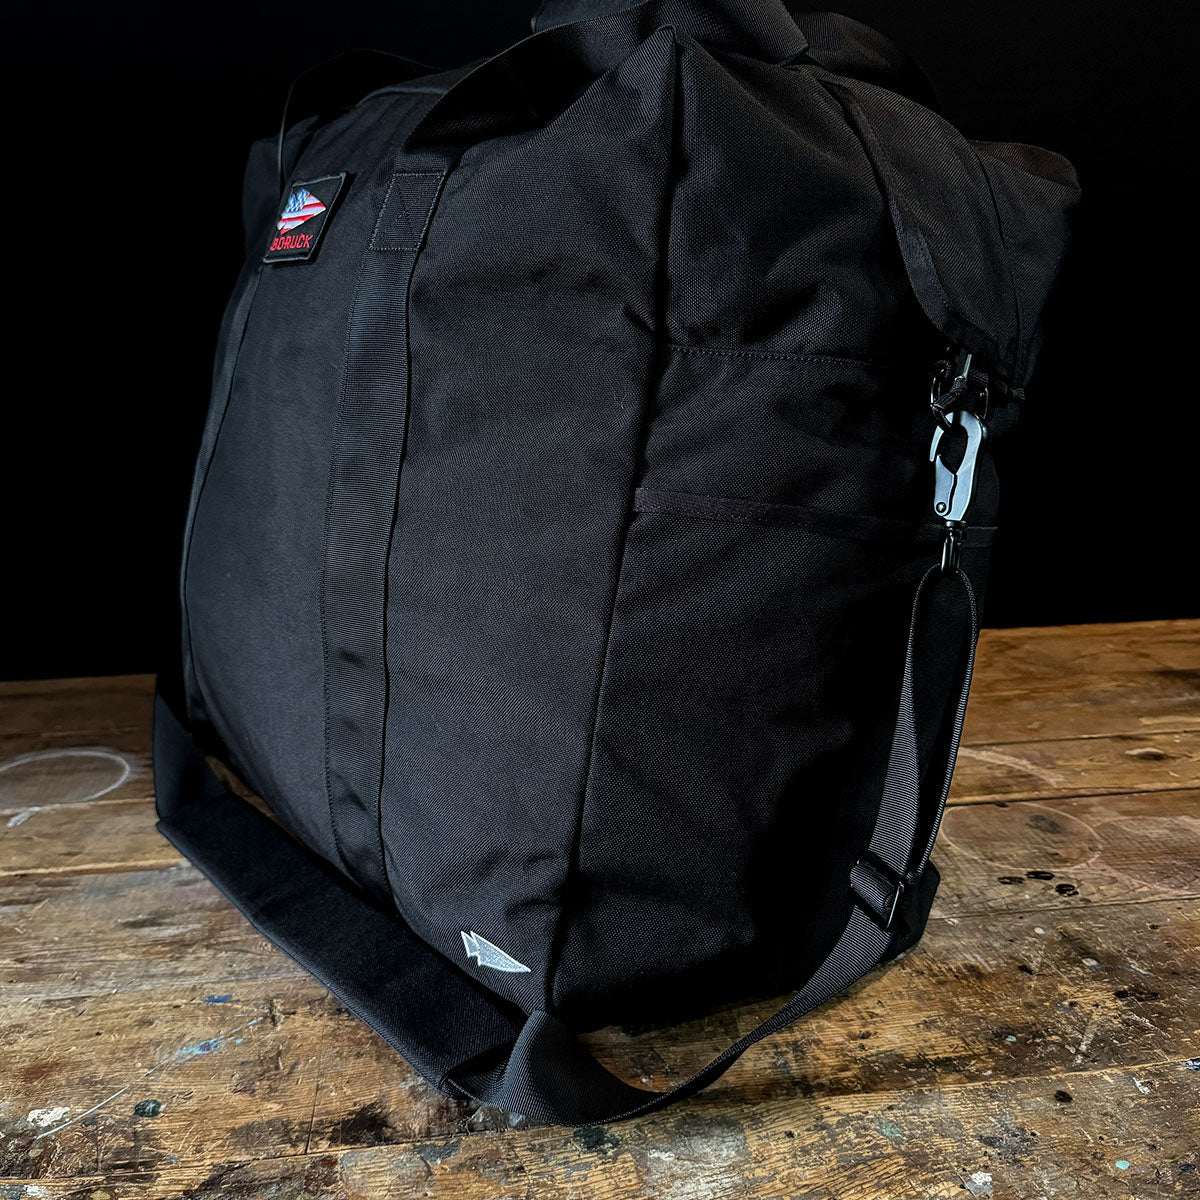 Kit Bag (Includes Shoulder Strap)